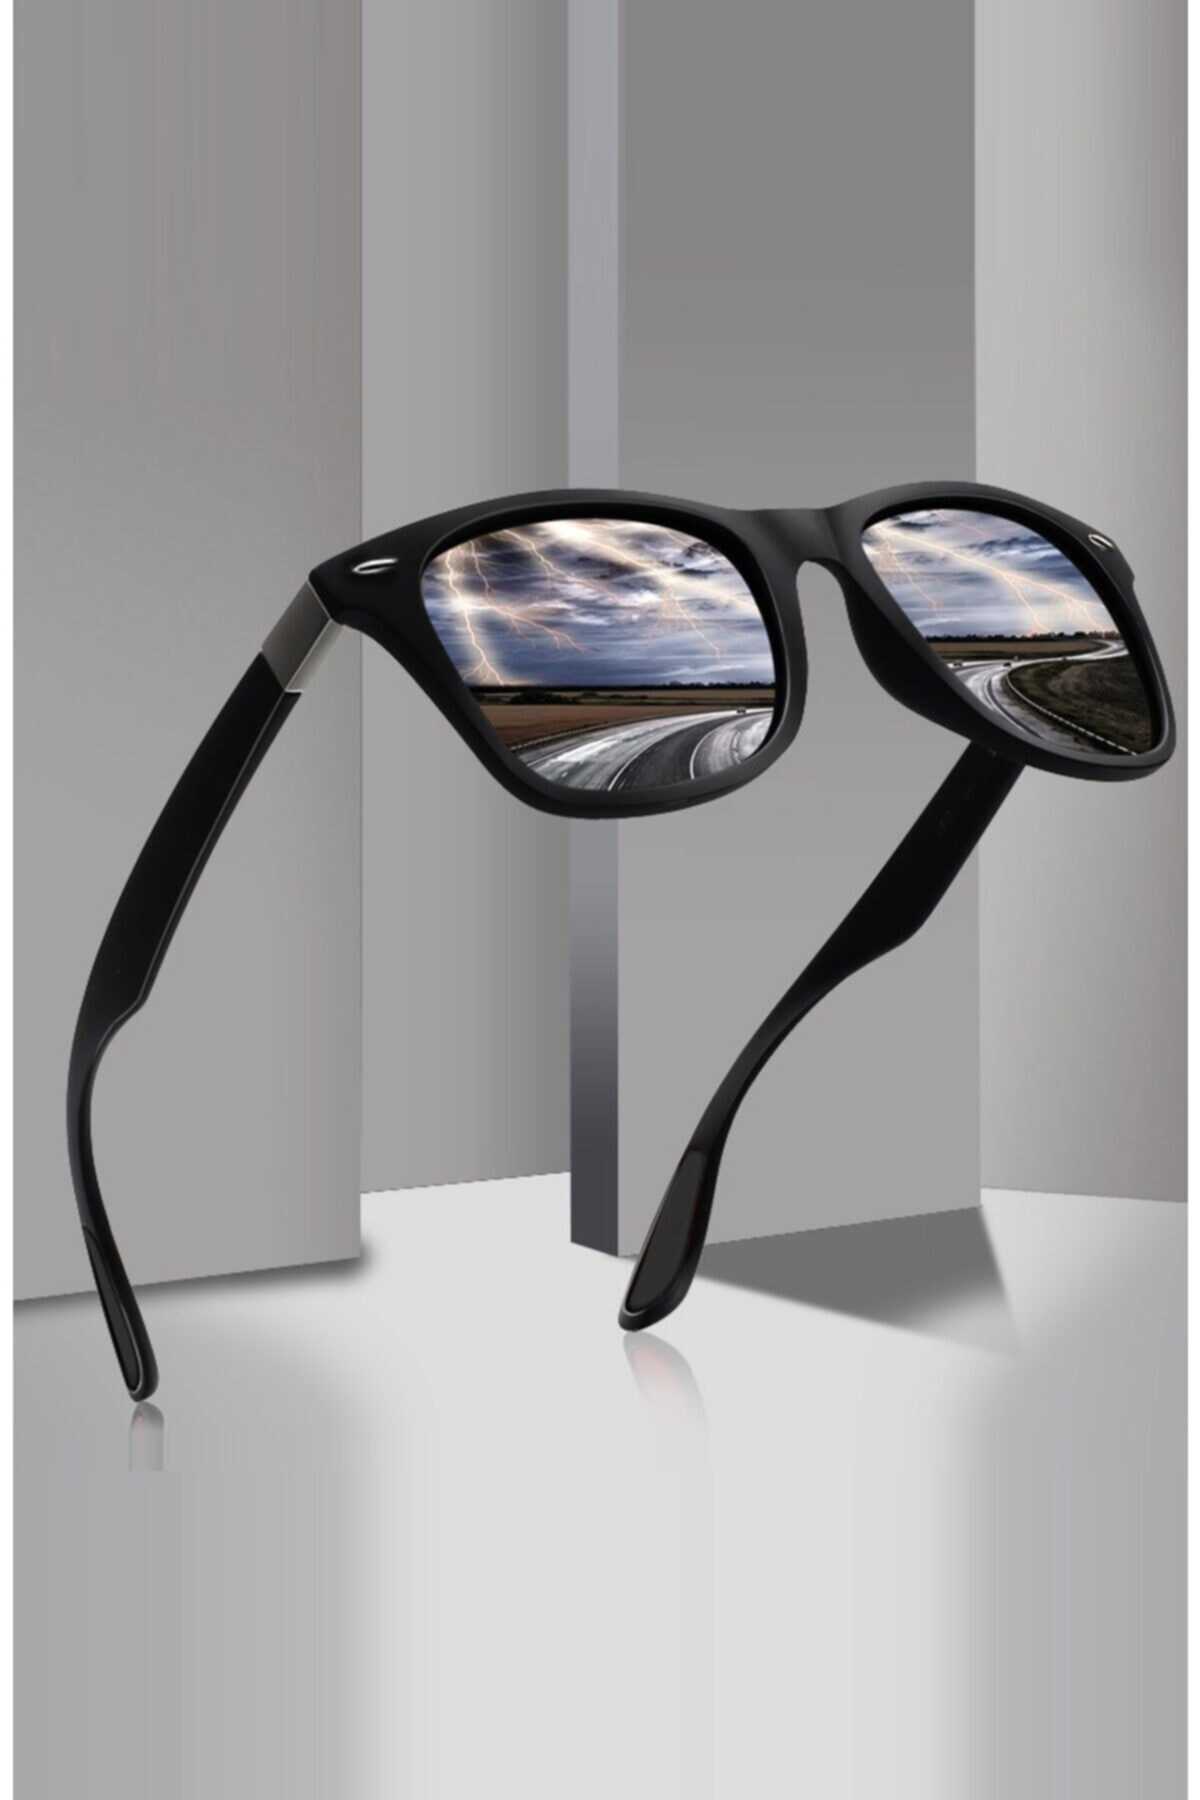 عینک آفتابی یونیسکس Harmony Bh 6002-11s C101p